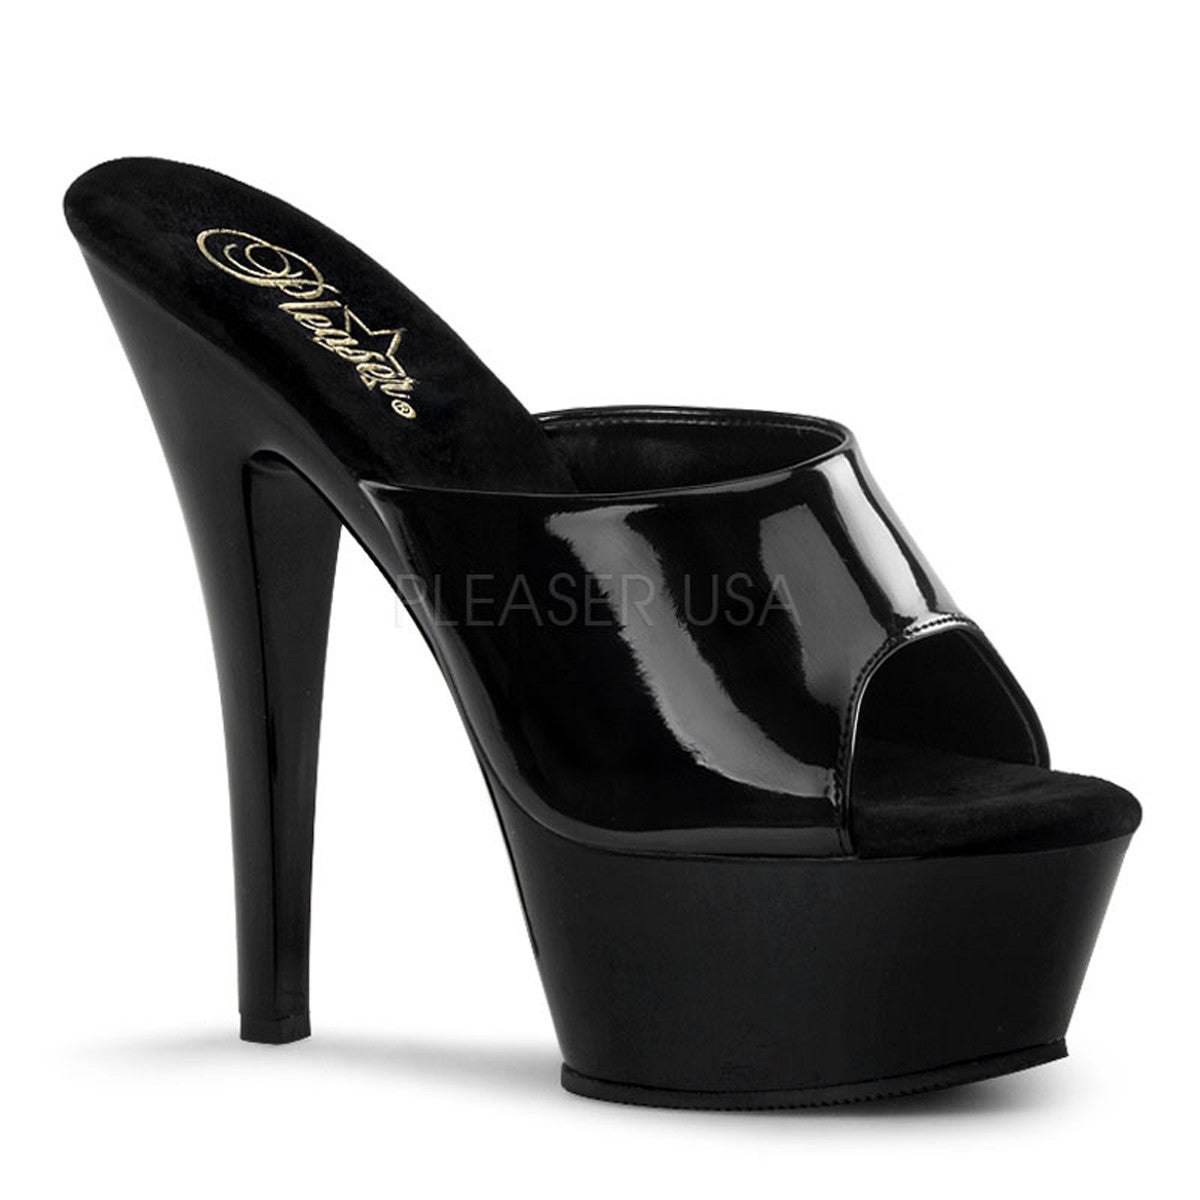 PLEASER KISS-201 Black Pat Platform Sandals - Shoecup.com - 1